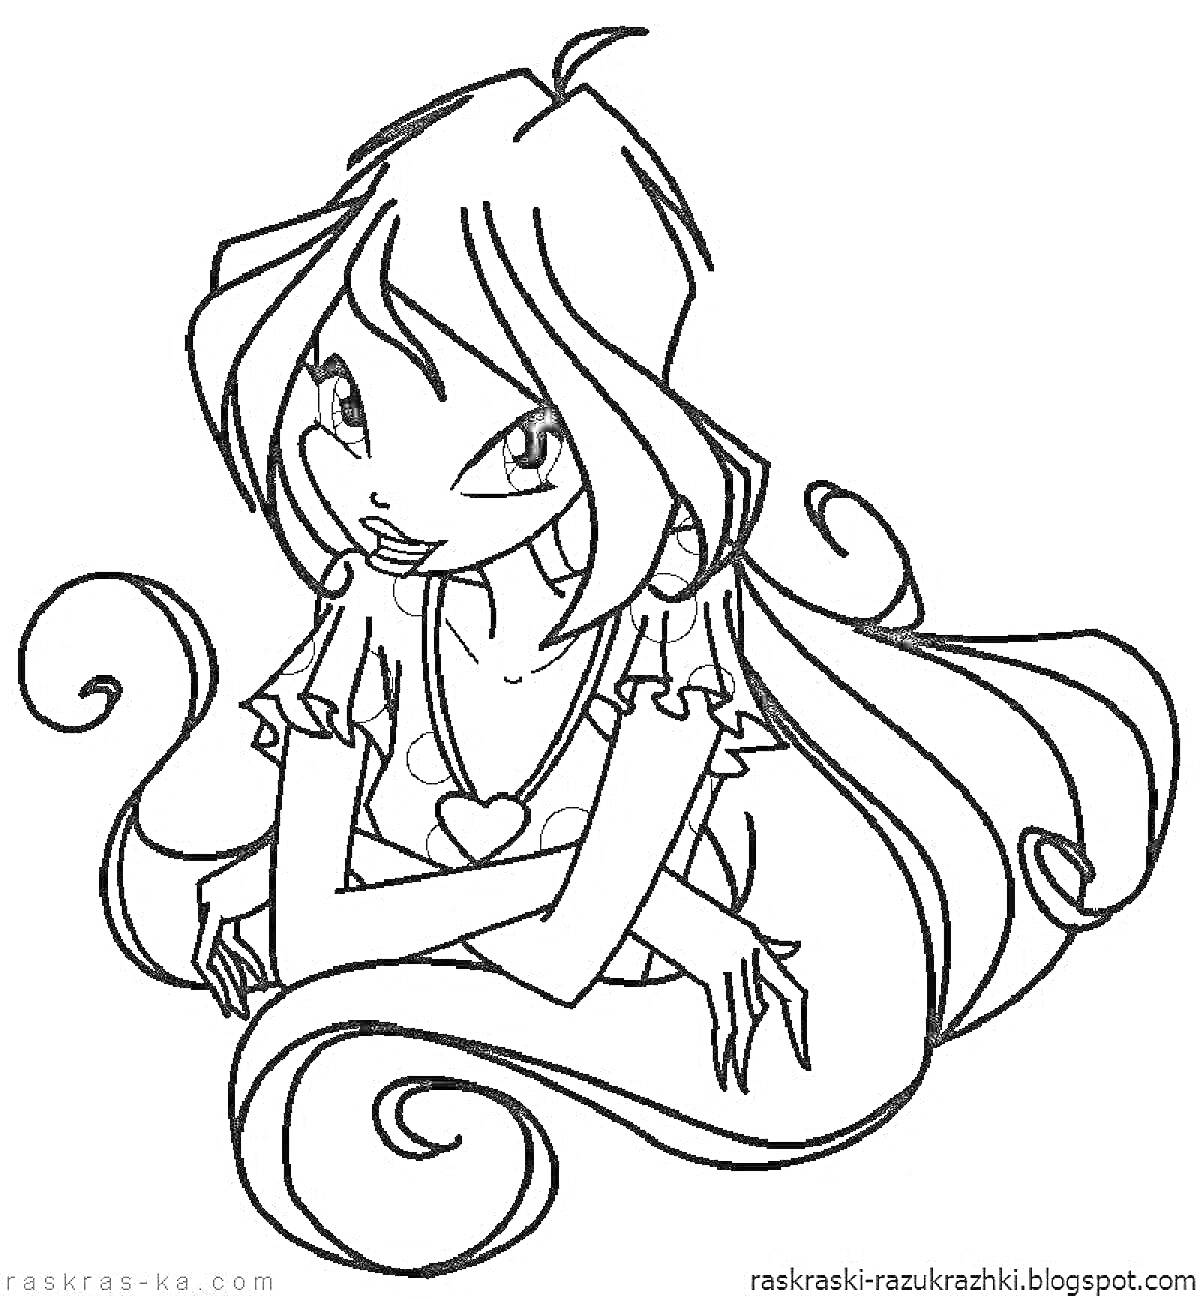 Раскраска Девочка с длинными волосами и сердечком на кофточке